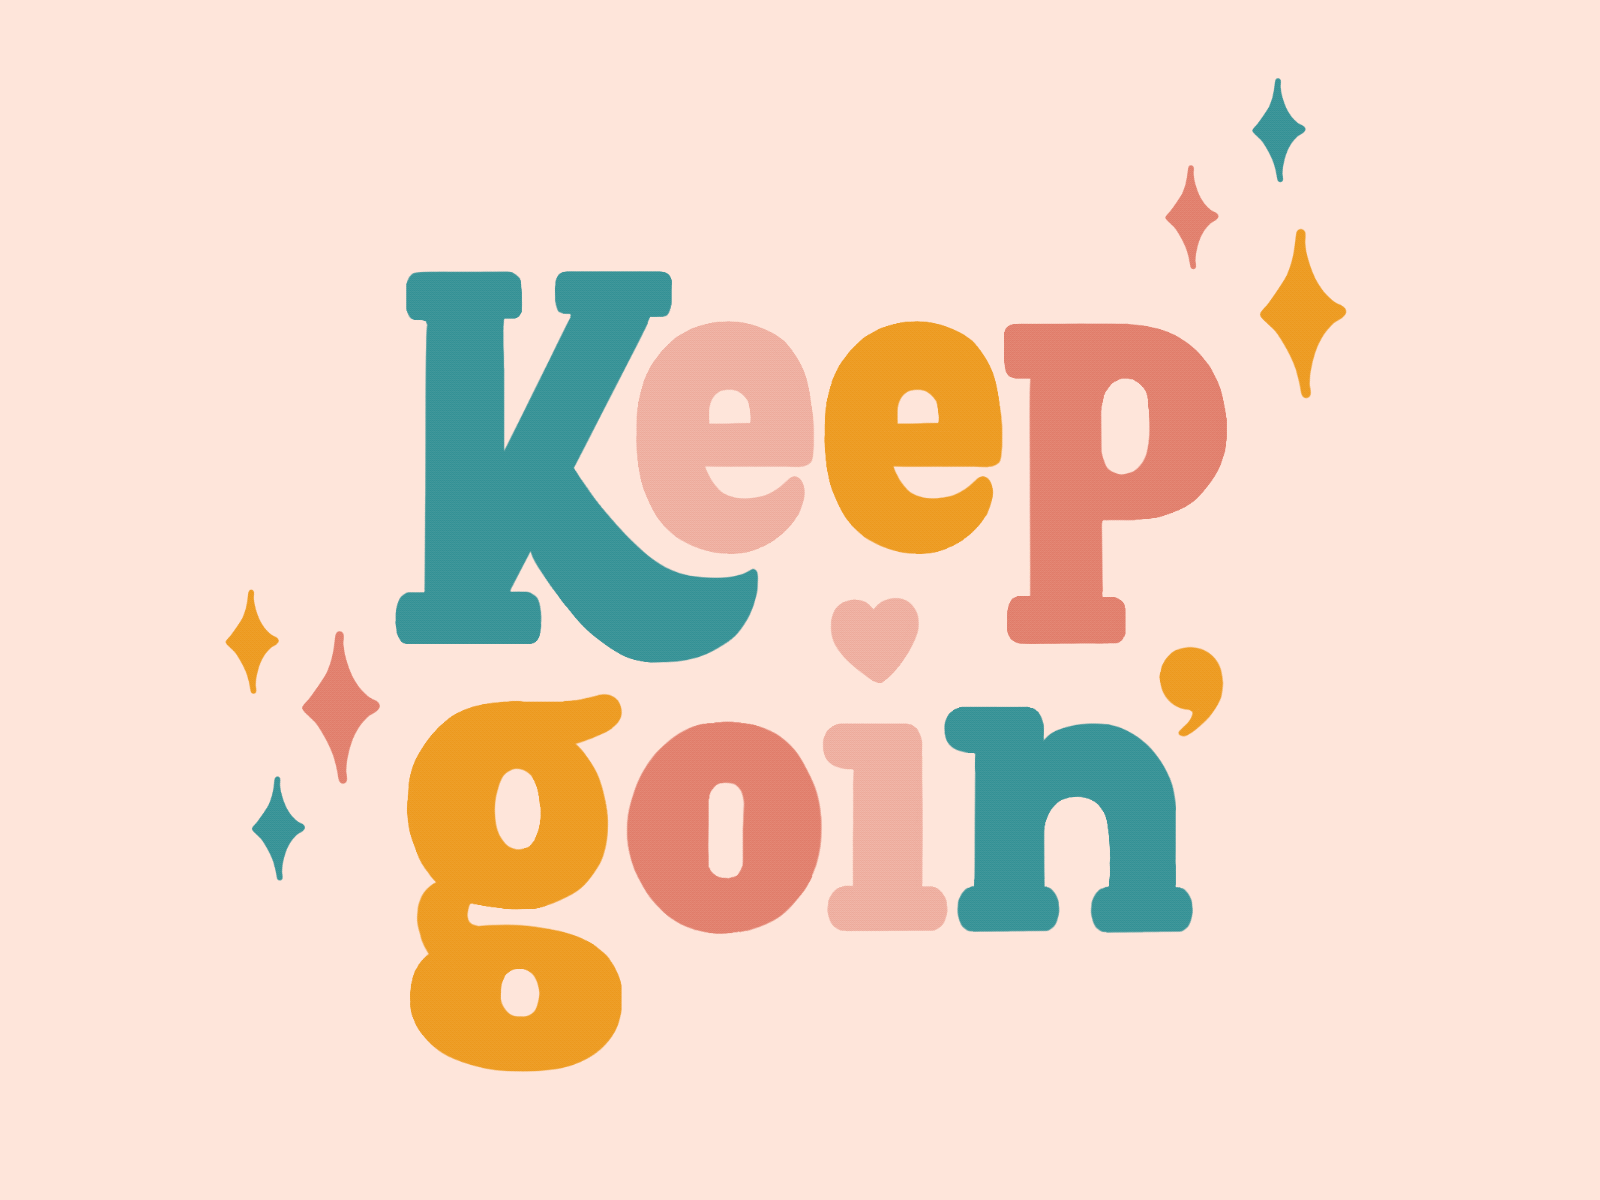 Keep goin'